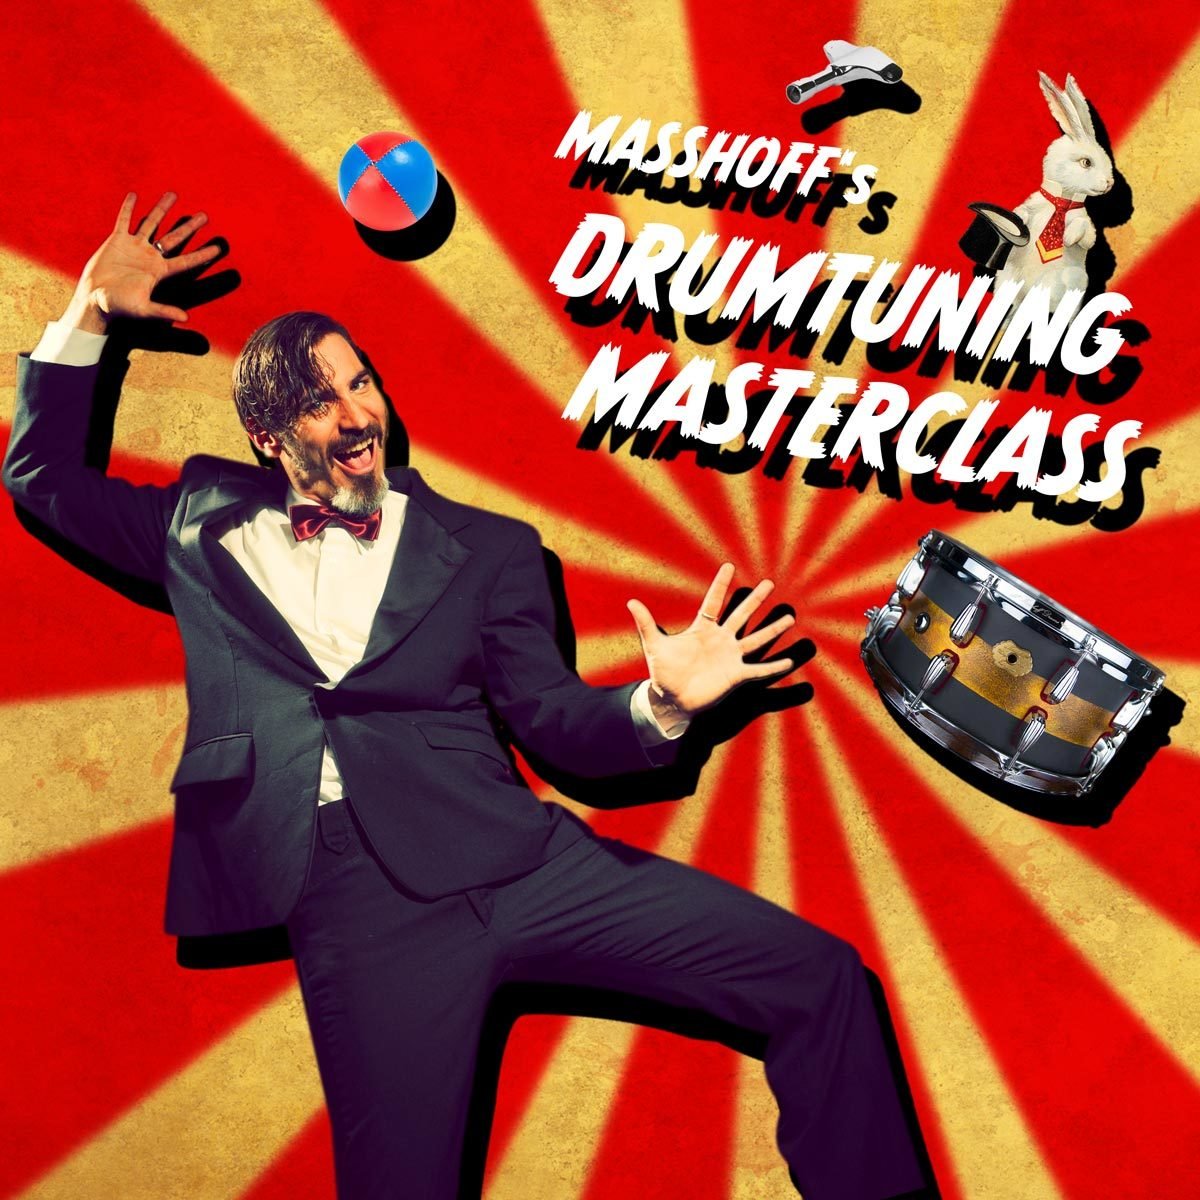 Z___Drumtuning Masterclass Workshops (Deutschland)